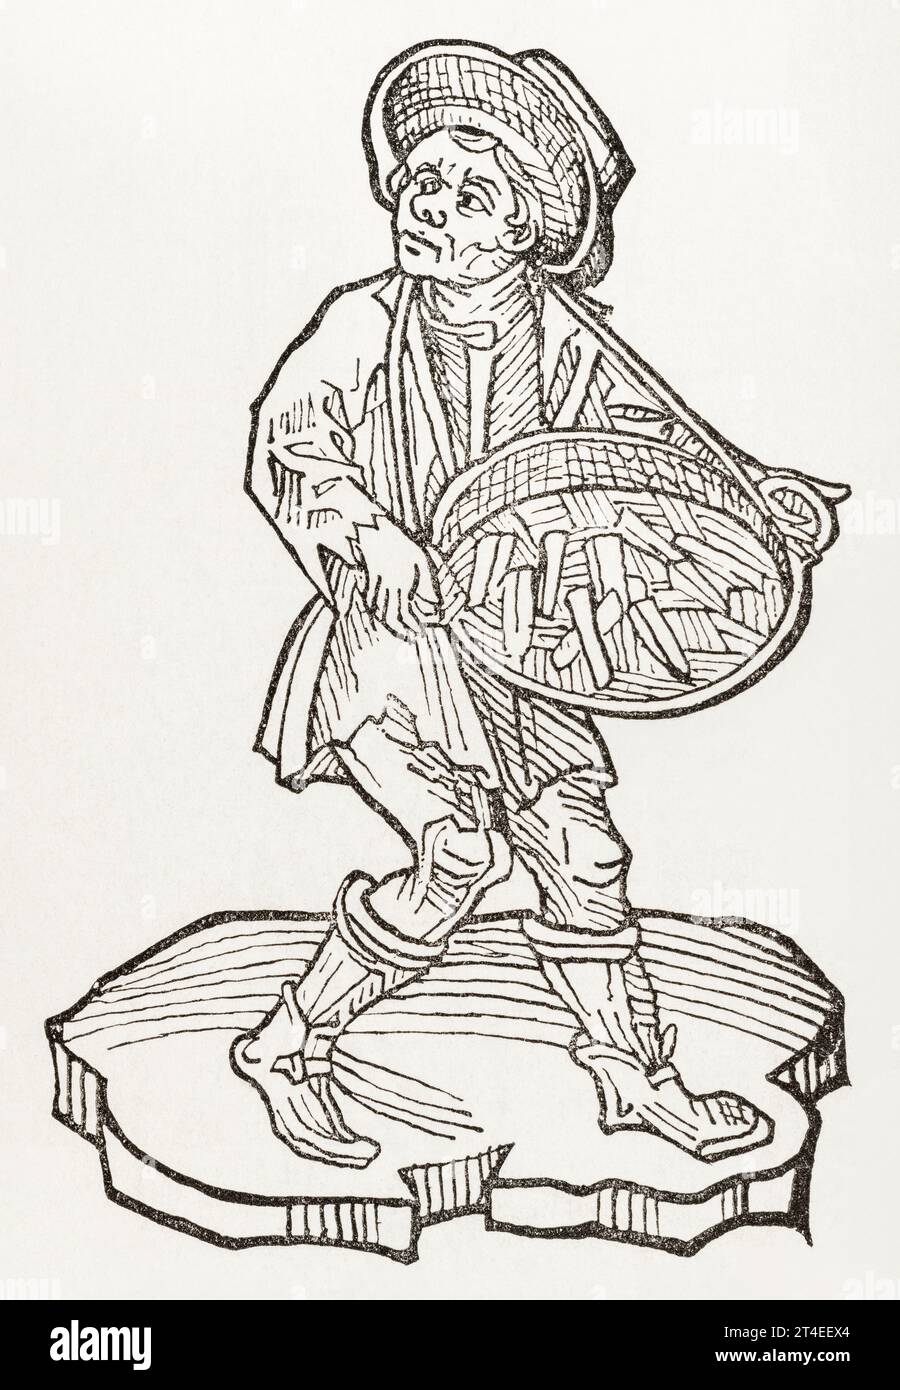 15e c. gravure sur bois de Peddlar de la Terre médicinale rouge (comme Terra sigillata) dans Hortus Sanitatis / jardin de la Santé, 1486. Voir Remarques. Banque D'Images